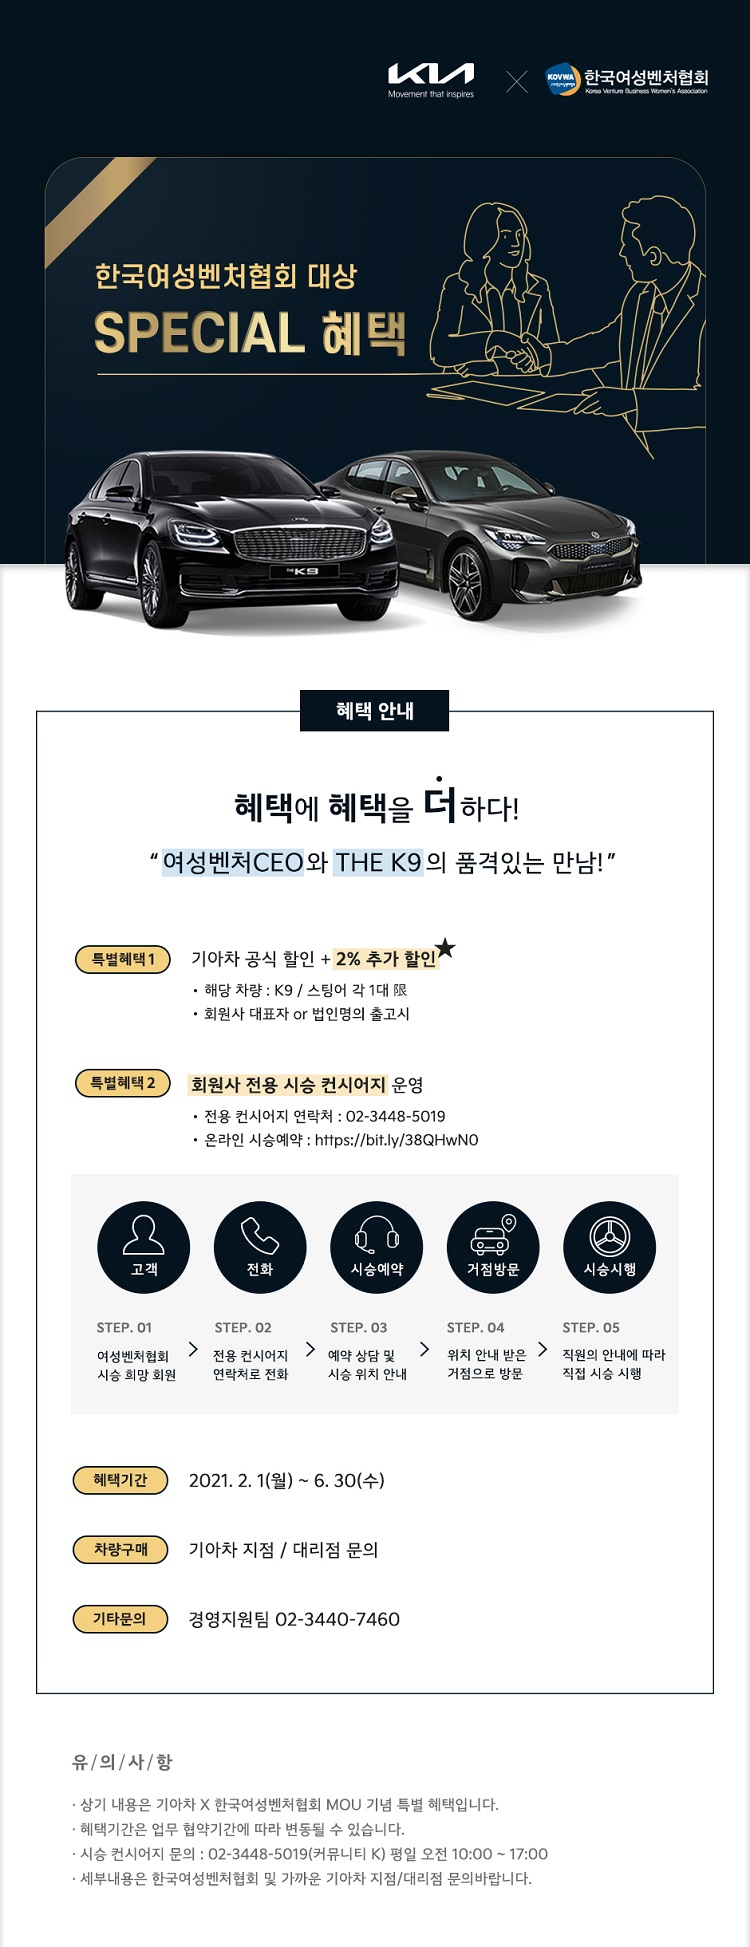 회원서비스] 기아자동차 공식할인 + 2% 추가 프로모션 안내 : 한국여성벤처협회